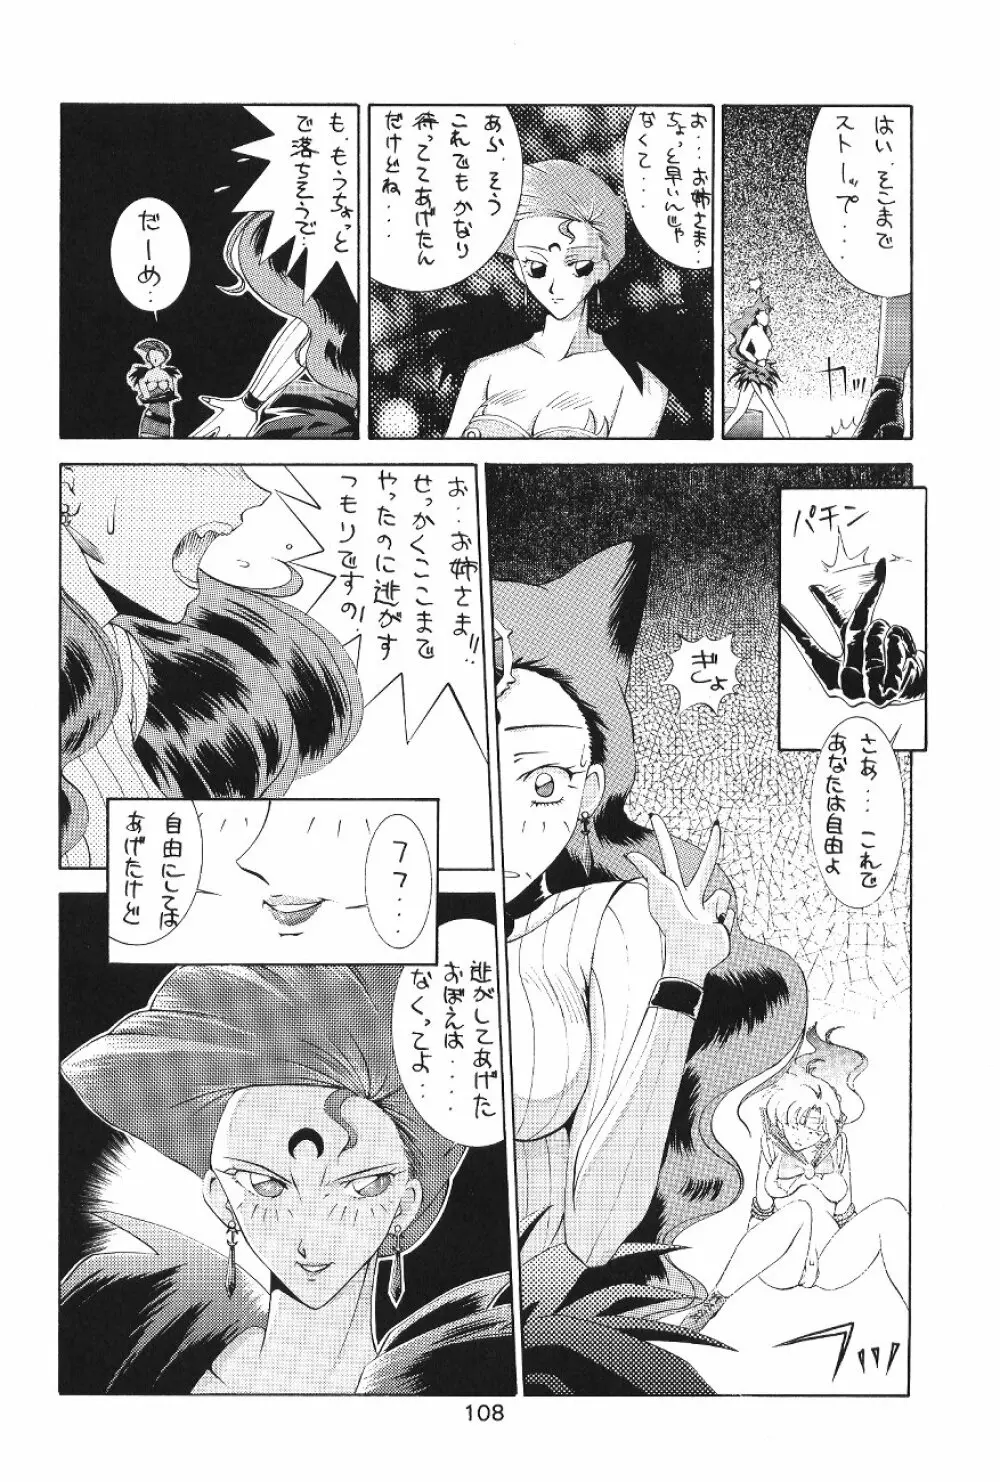 KATZE 7 上巻 - page109